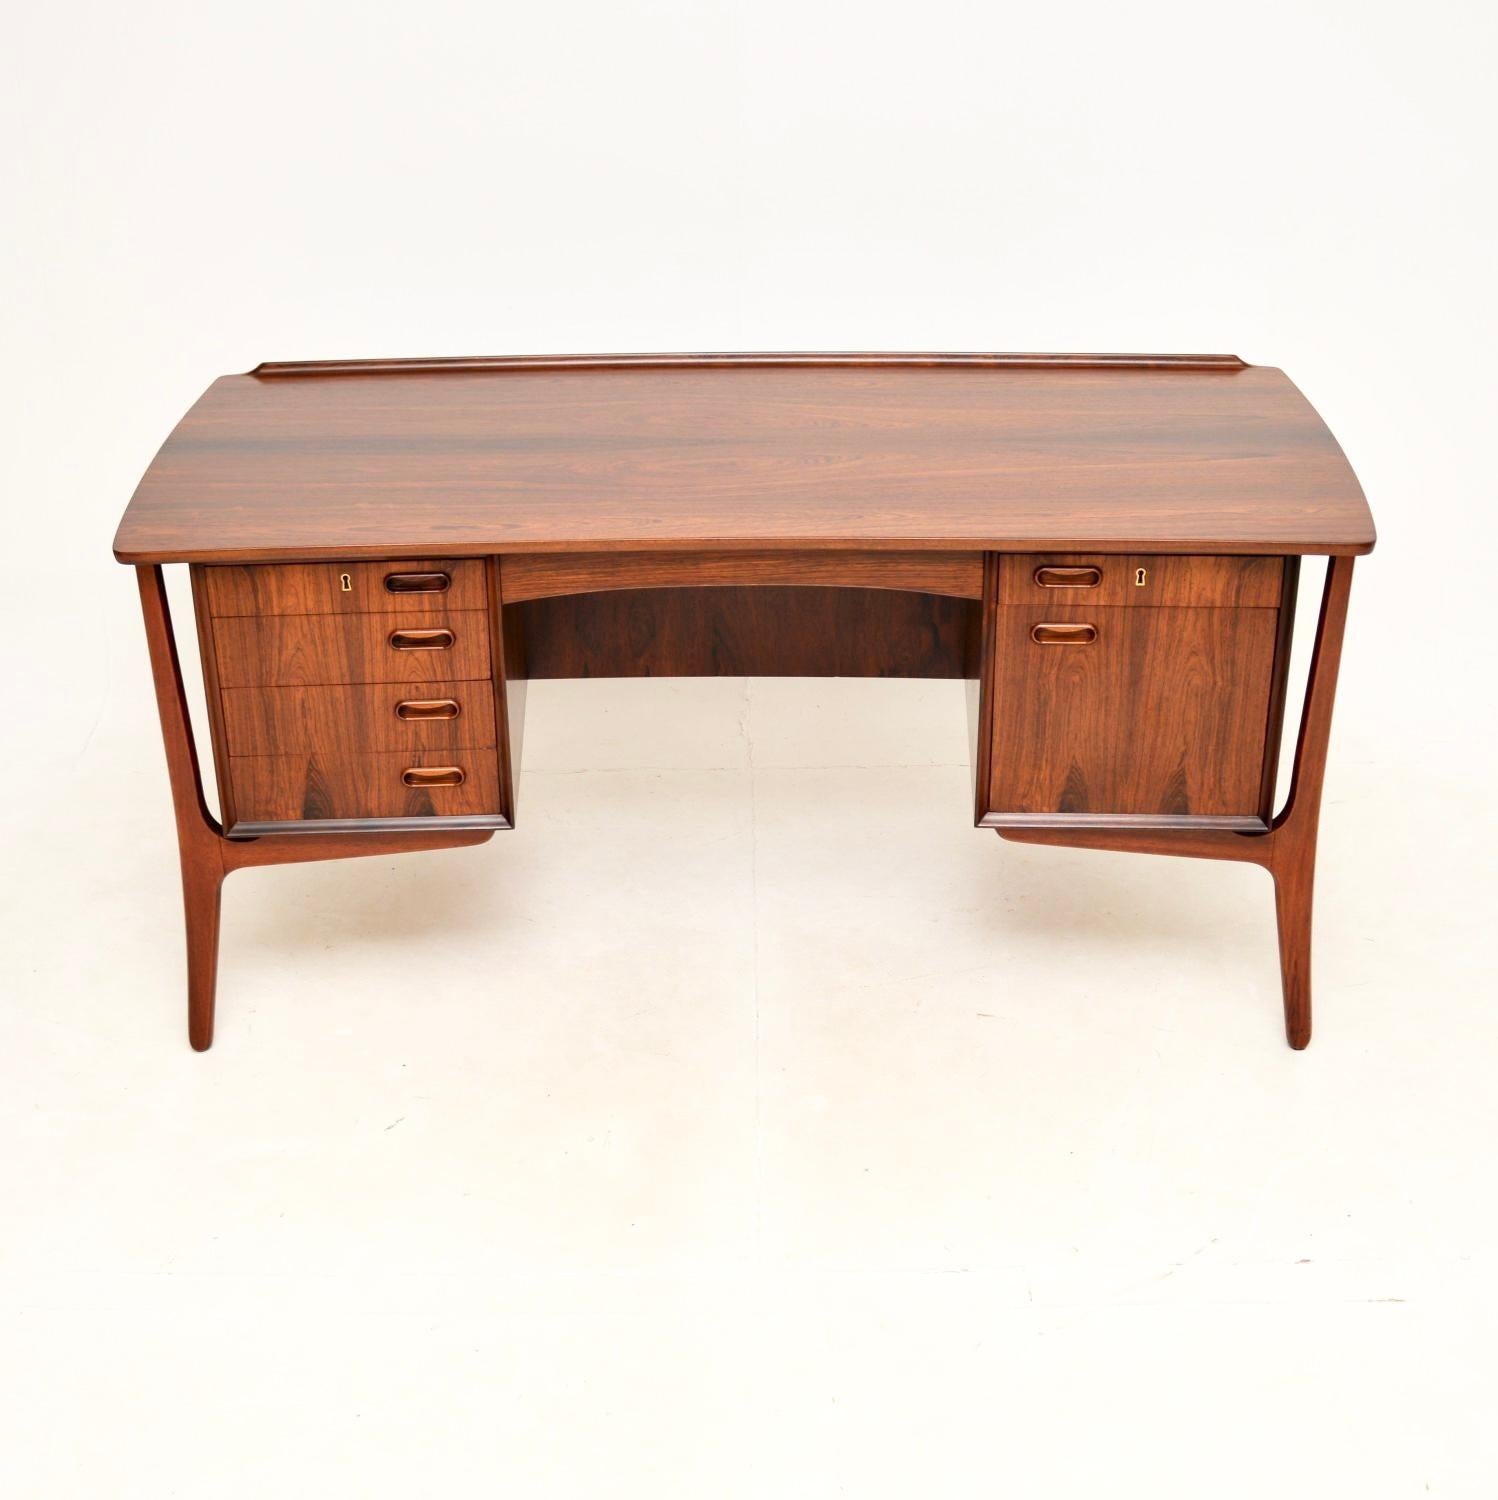 Ein wunderschöner dänischer Vintage-Schreibtisch von Svend Aage Madsen für HP Hansen. Es wurde kürzlich aus Dänemark importiert und stammt aus den 1960er Jahren.

Er ist von hervorragender Qualität und hat ein unglaublich stilvolles Design. Die